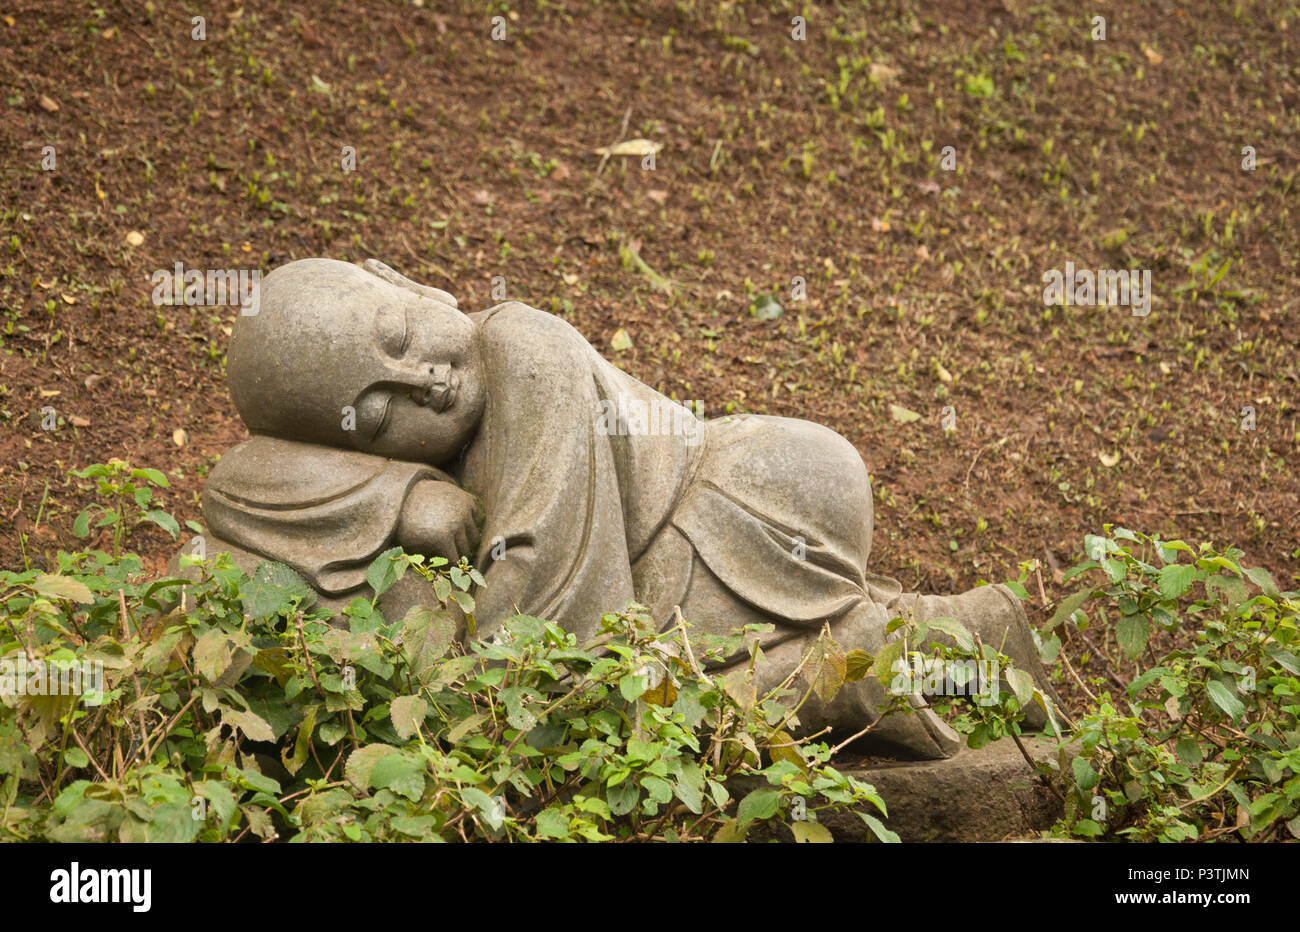 COTIA, SP - 21.02.2016: TEMPLO ZU LAI-Estátuas de BUda crinça keine Jardim de Entrada do Templo budista Zu Lai. (Foto: Daniela Maria/Fotoarena) Stockfoto